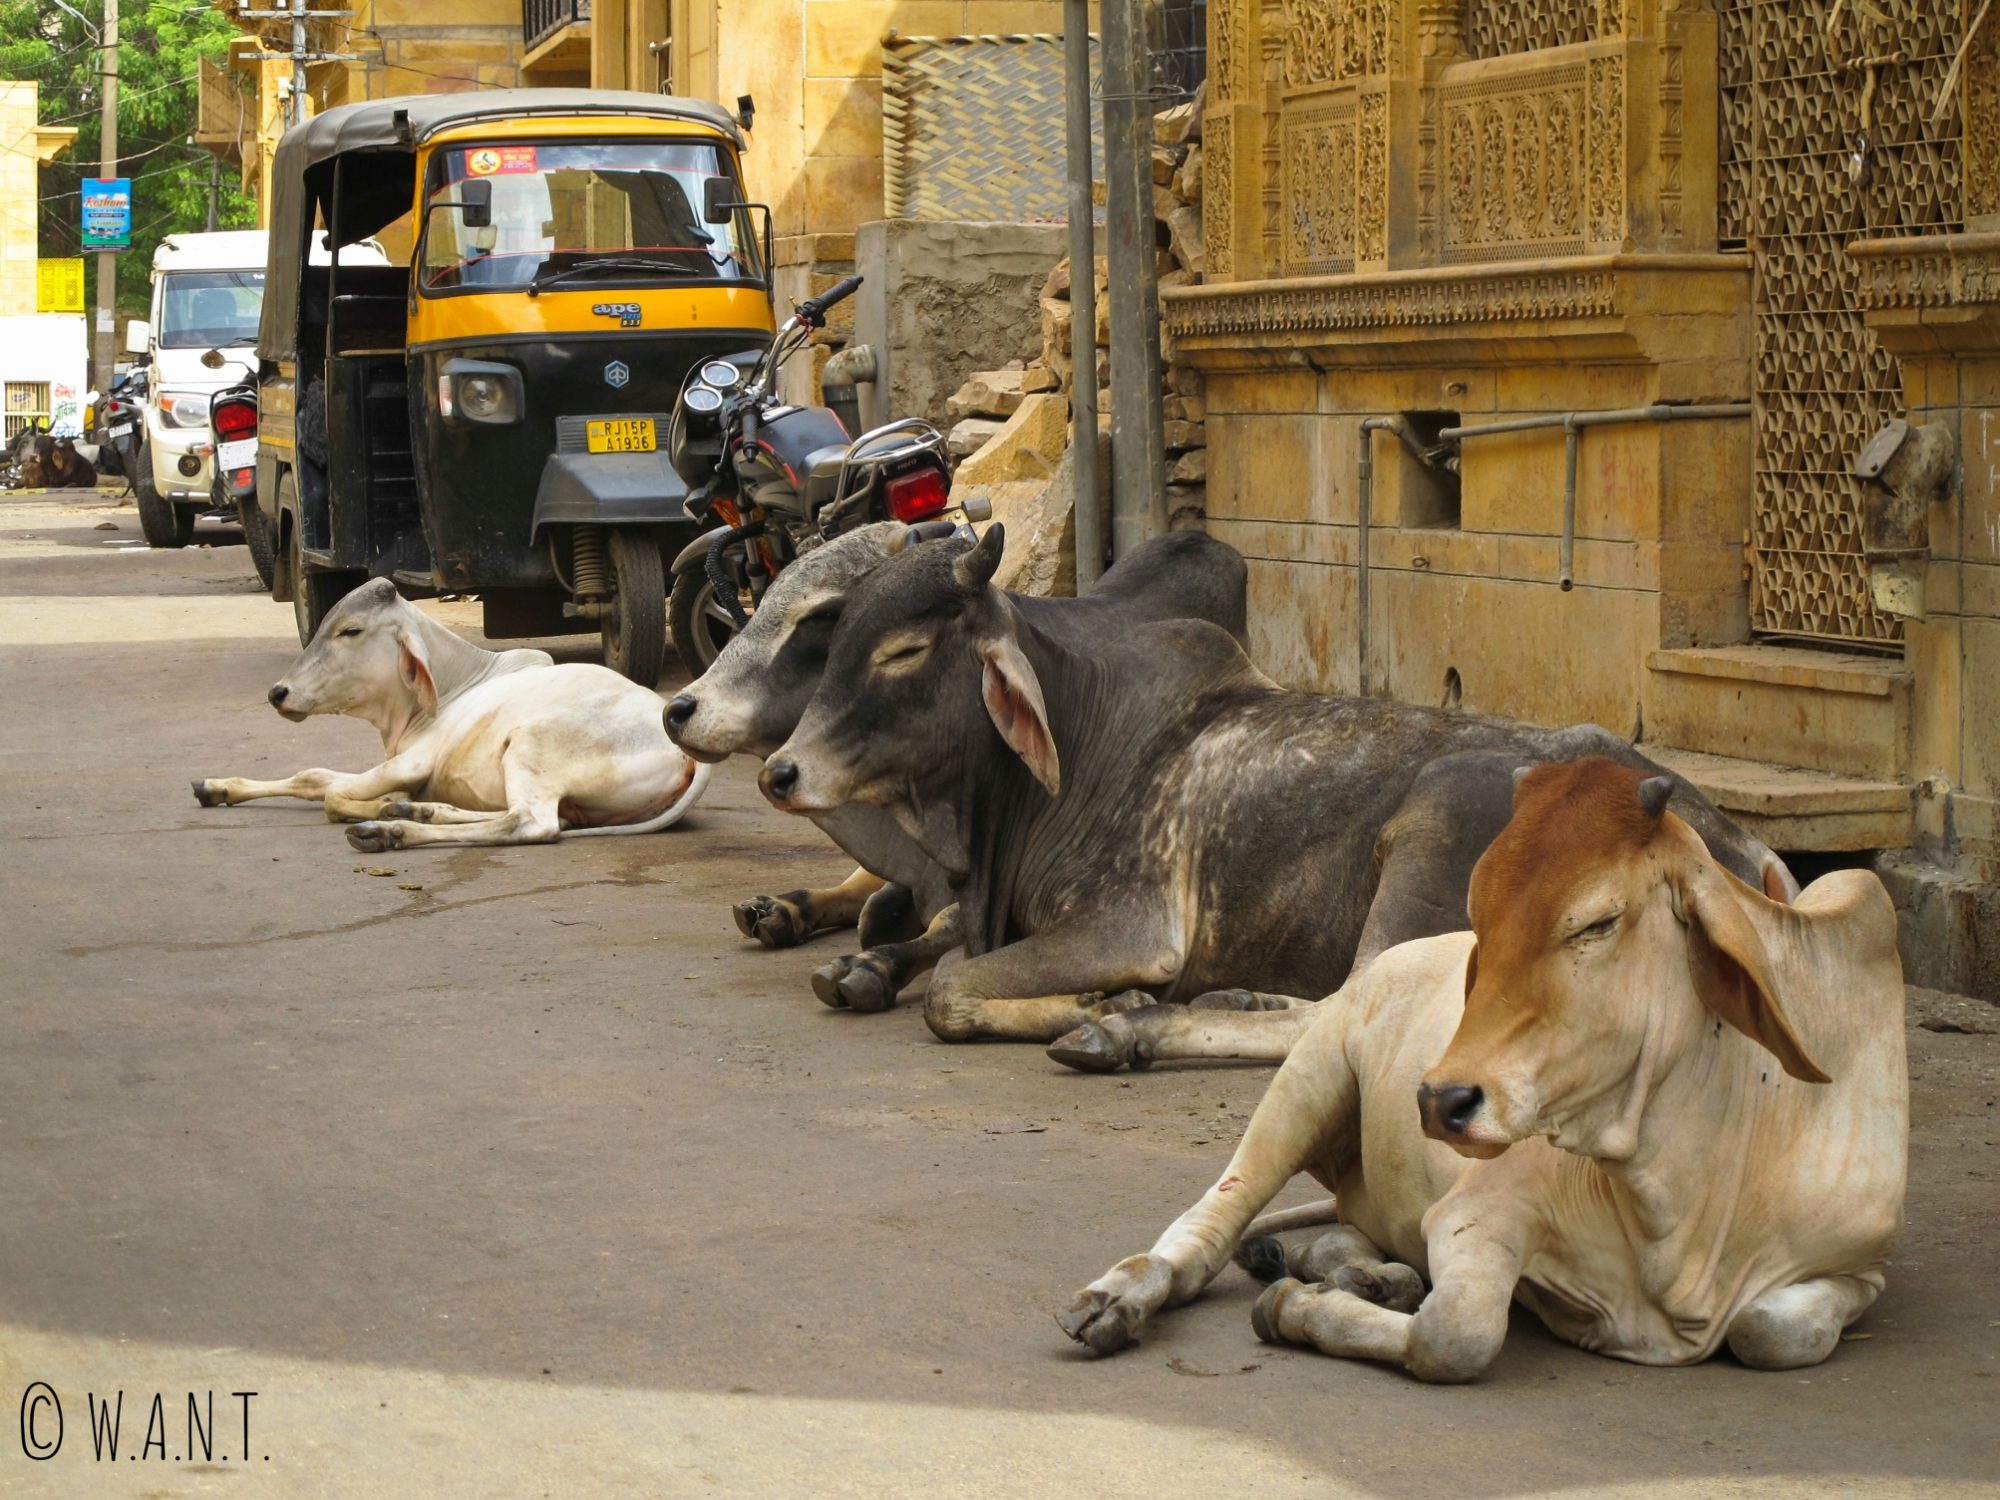 La population de vaches dans les rues de Jaisalmer est tout simplement incroyable !